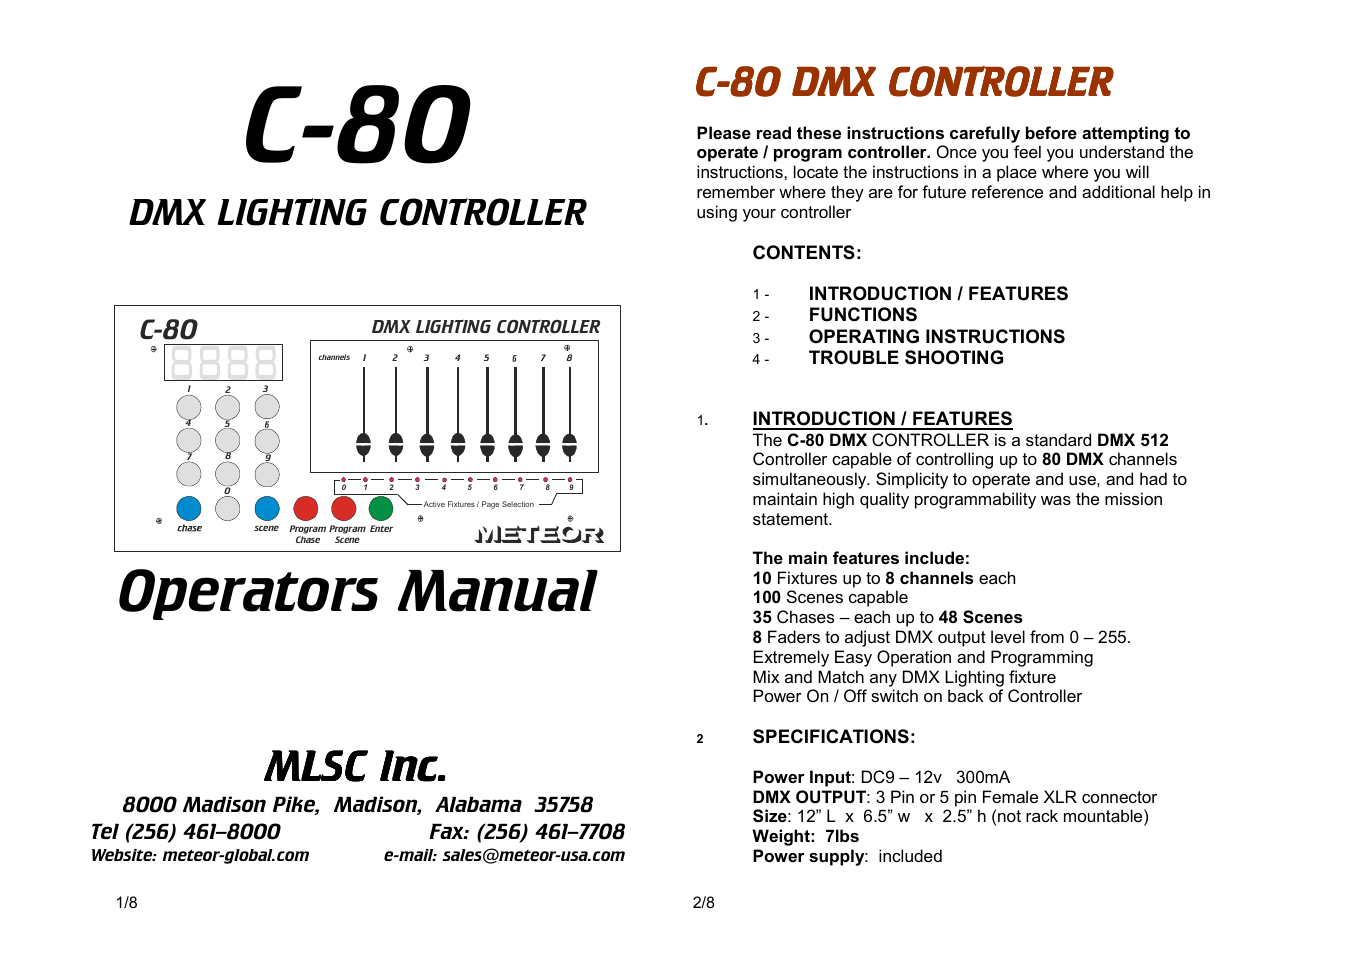 C-80 DMX Controller